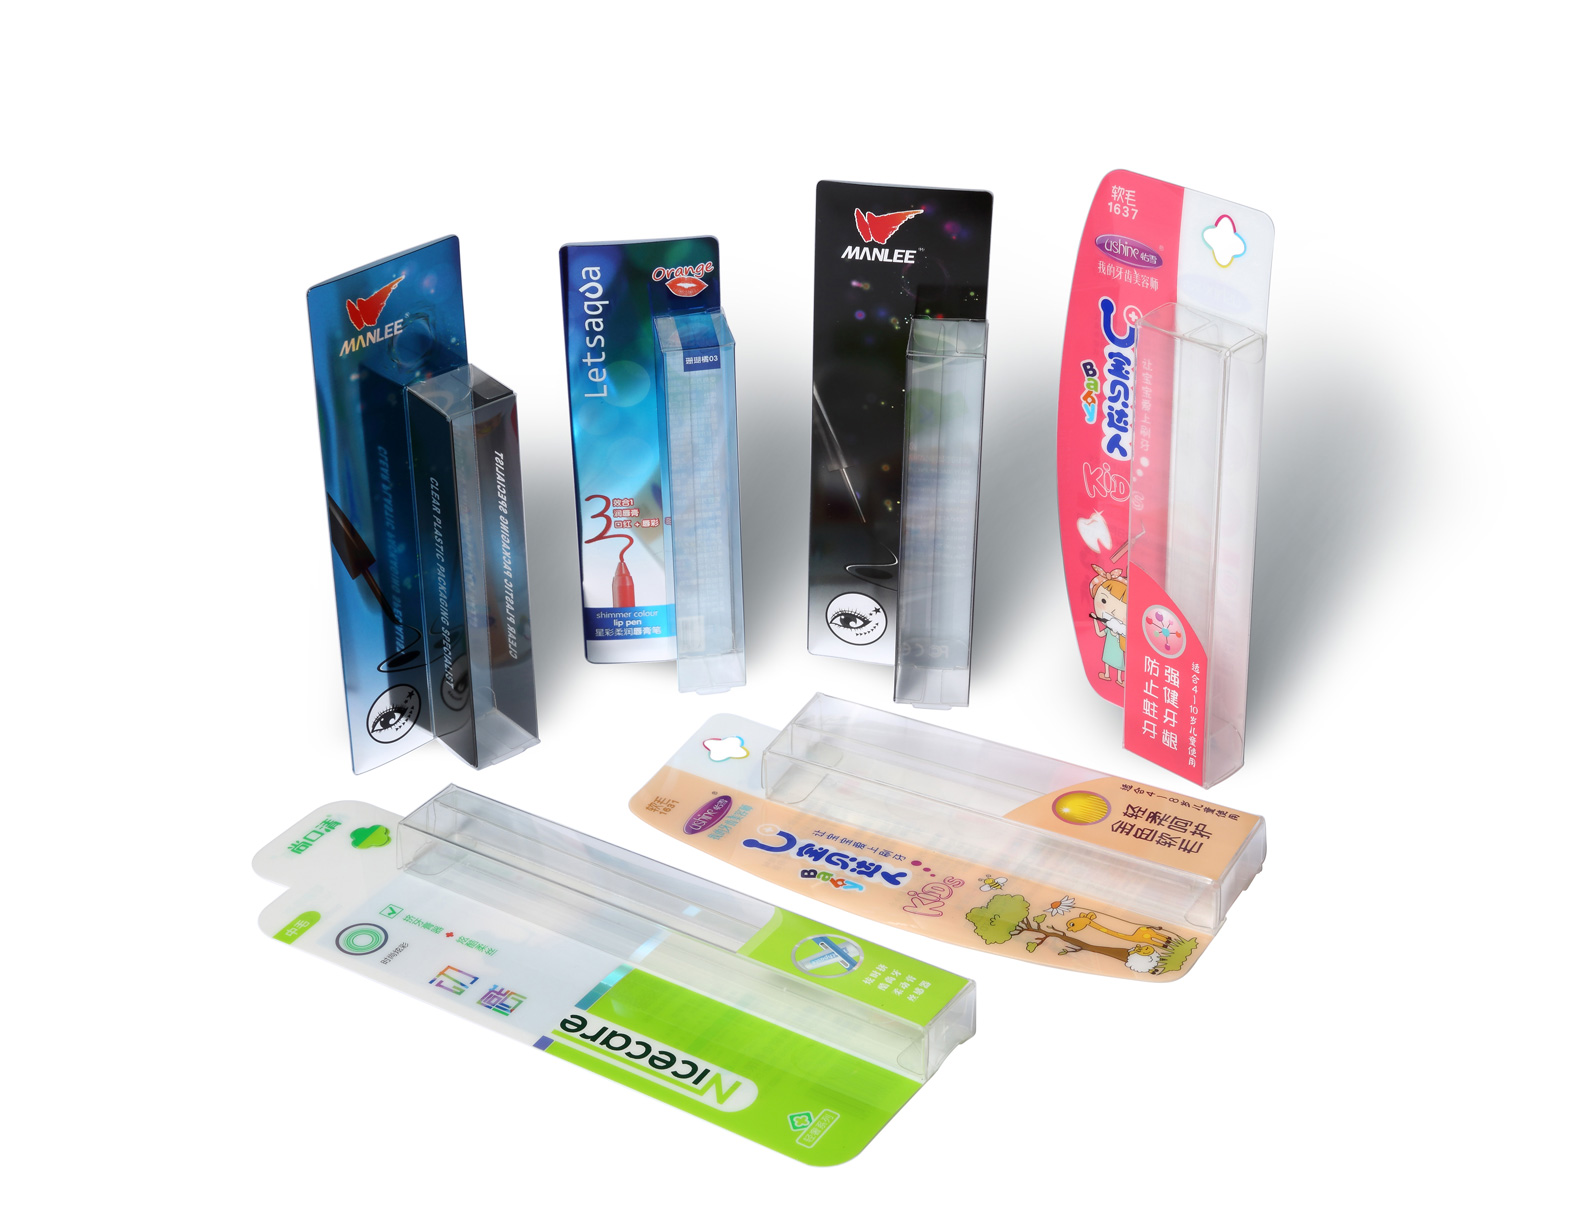 深圳市万利印刷有限公司将亮相CIPPME上海国际包装展